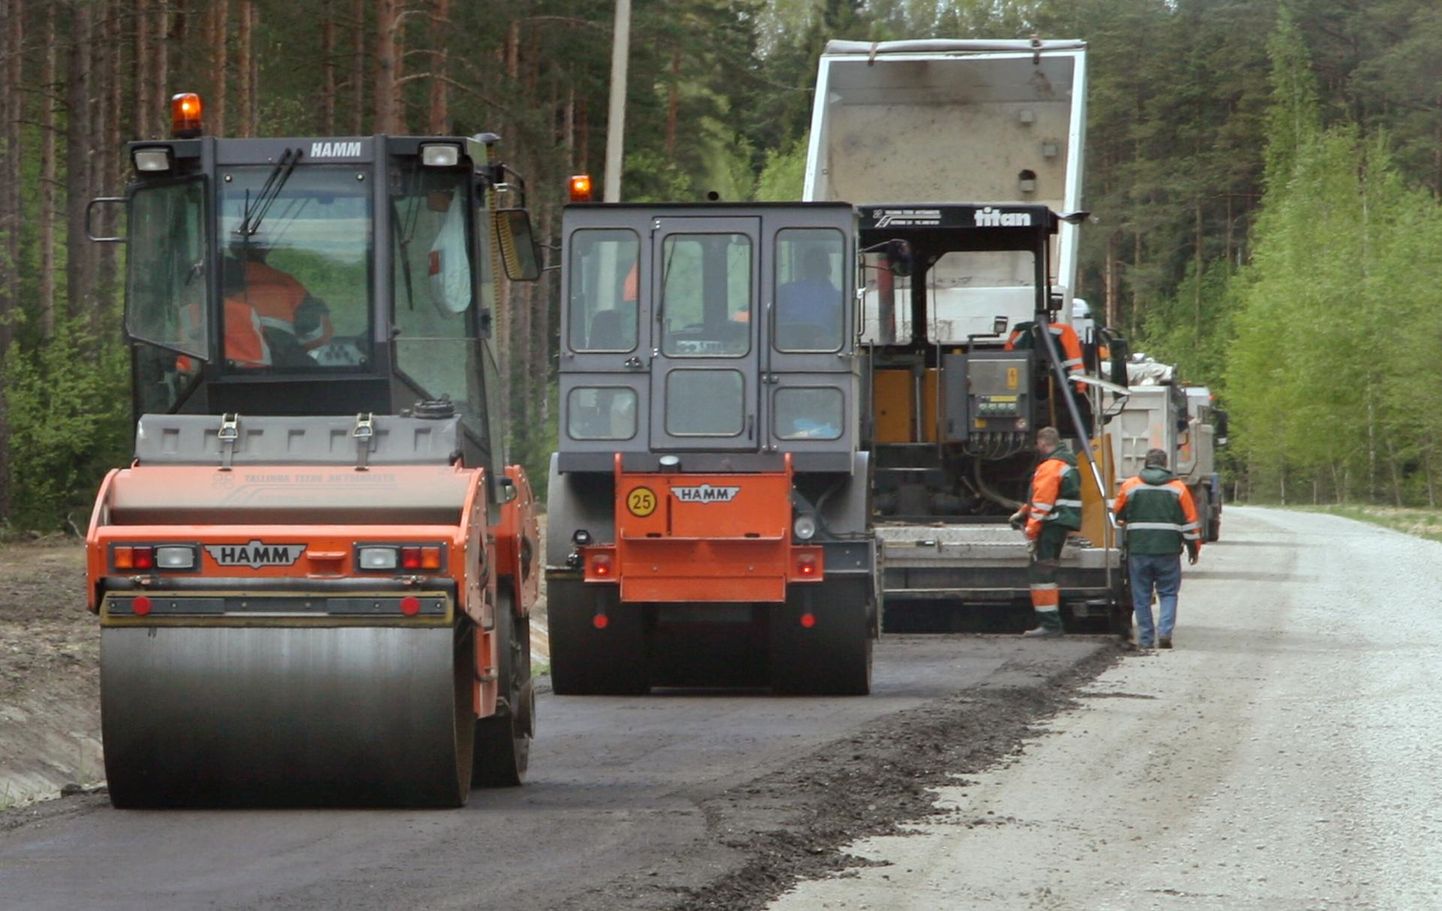 Valitsus lubab jätkata nii teede ehitamist, nende remontimist kui tolmuvabaks muutmist.